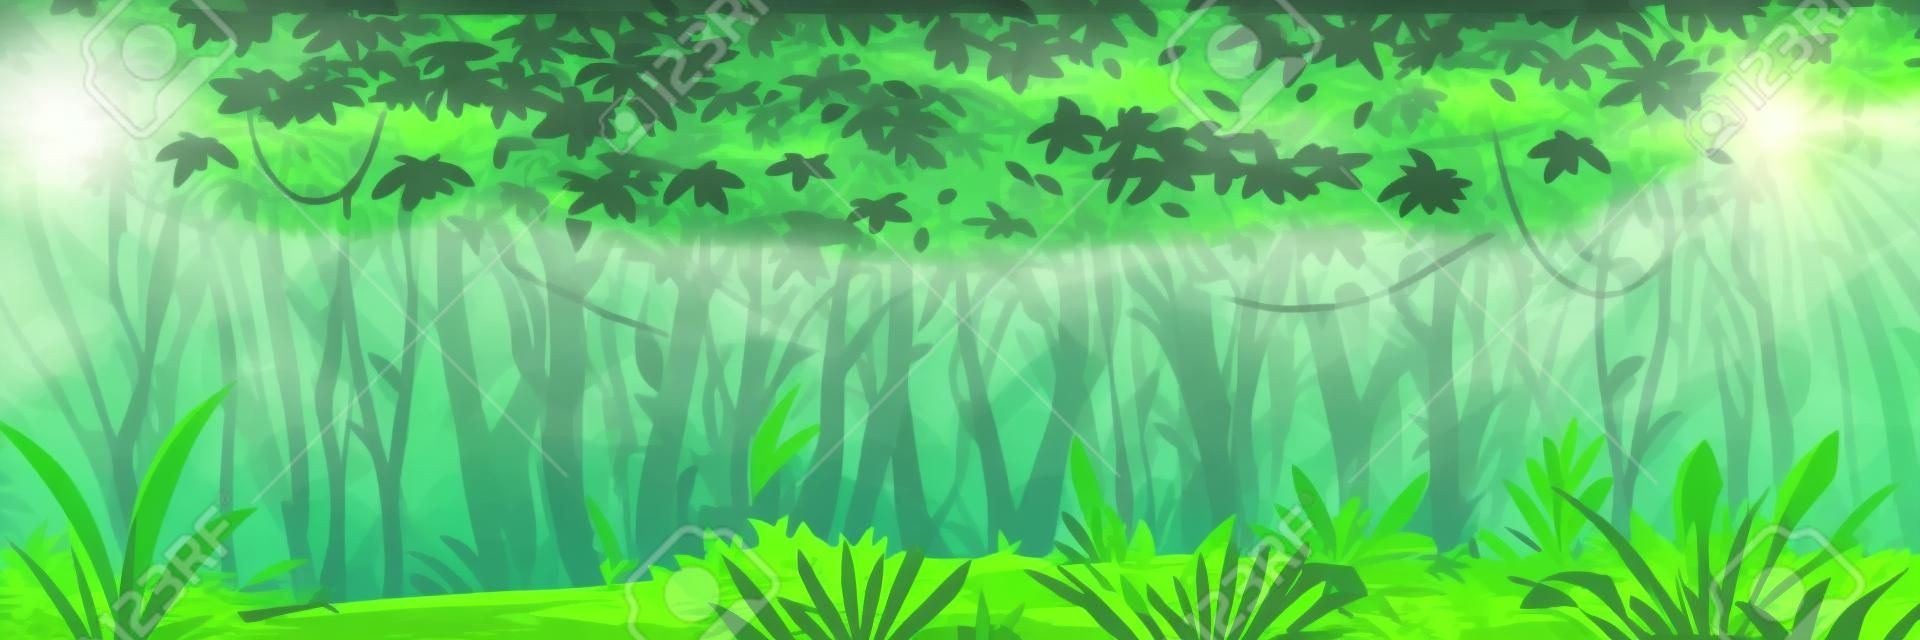 Bosque de selva oscura y húmeda salvaje con árboles, arbustos y lianas, paisaje natural con follaje de selva verde y plantas exóticas que crecen en el suelo, banner horizontal con plantas tropicales en un día soleado